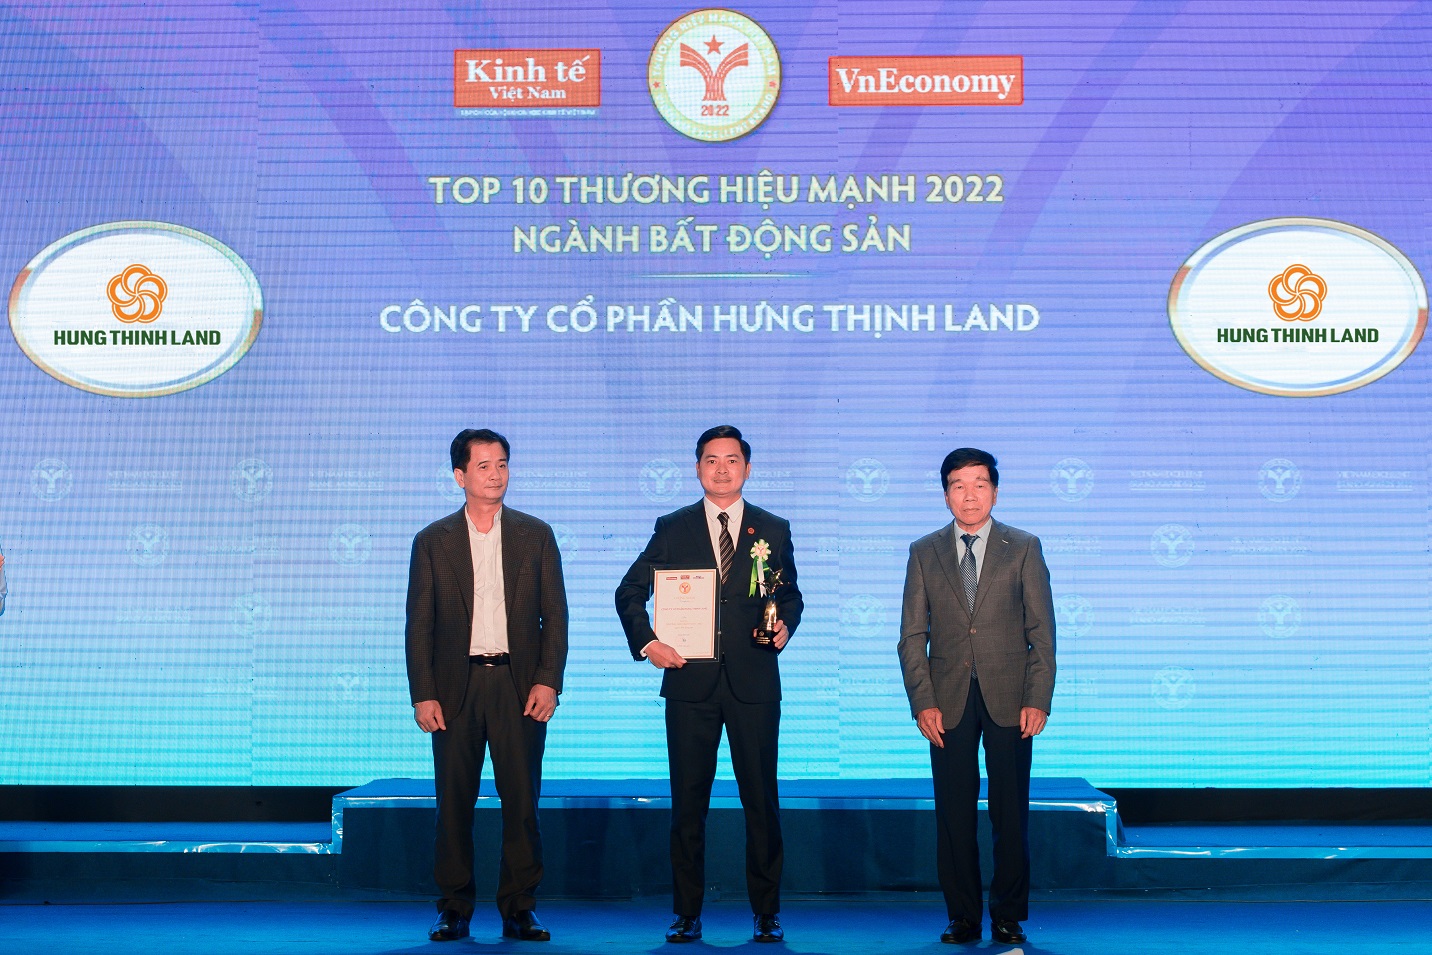 Ông Đỗ Văn Kiên - Giám đốc Kinh doanh khu vực Hà Nội đại diện Hưng Thịnh Land nhận giải thưởng “TOP 10 Thương hiệu mạnh - Ngành Bất động sản 2022”